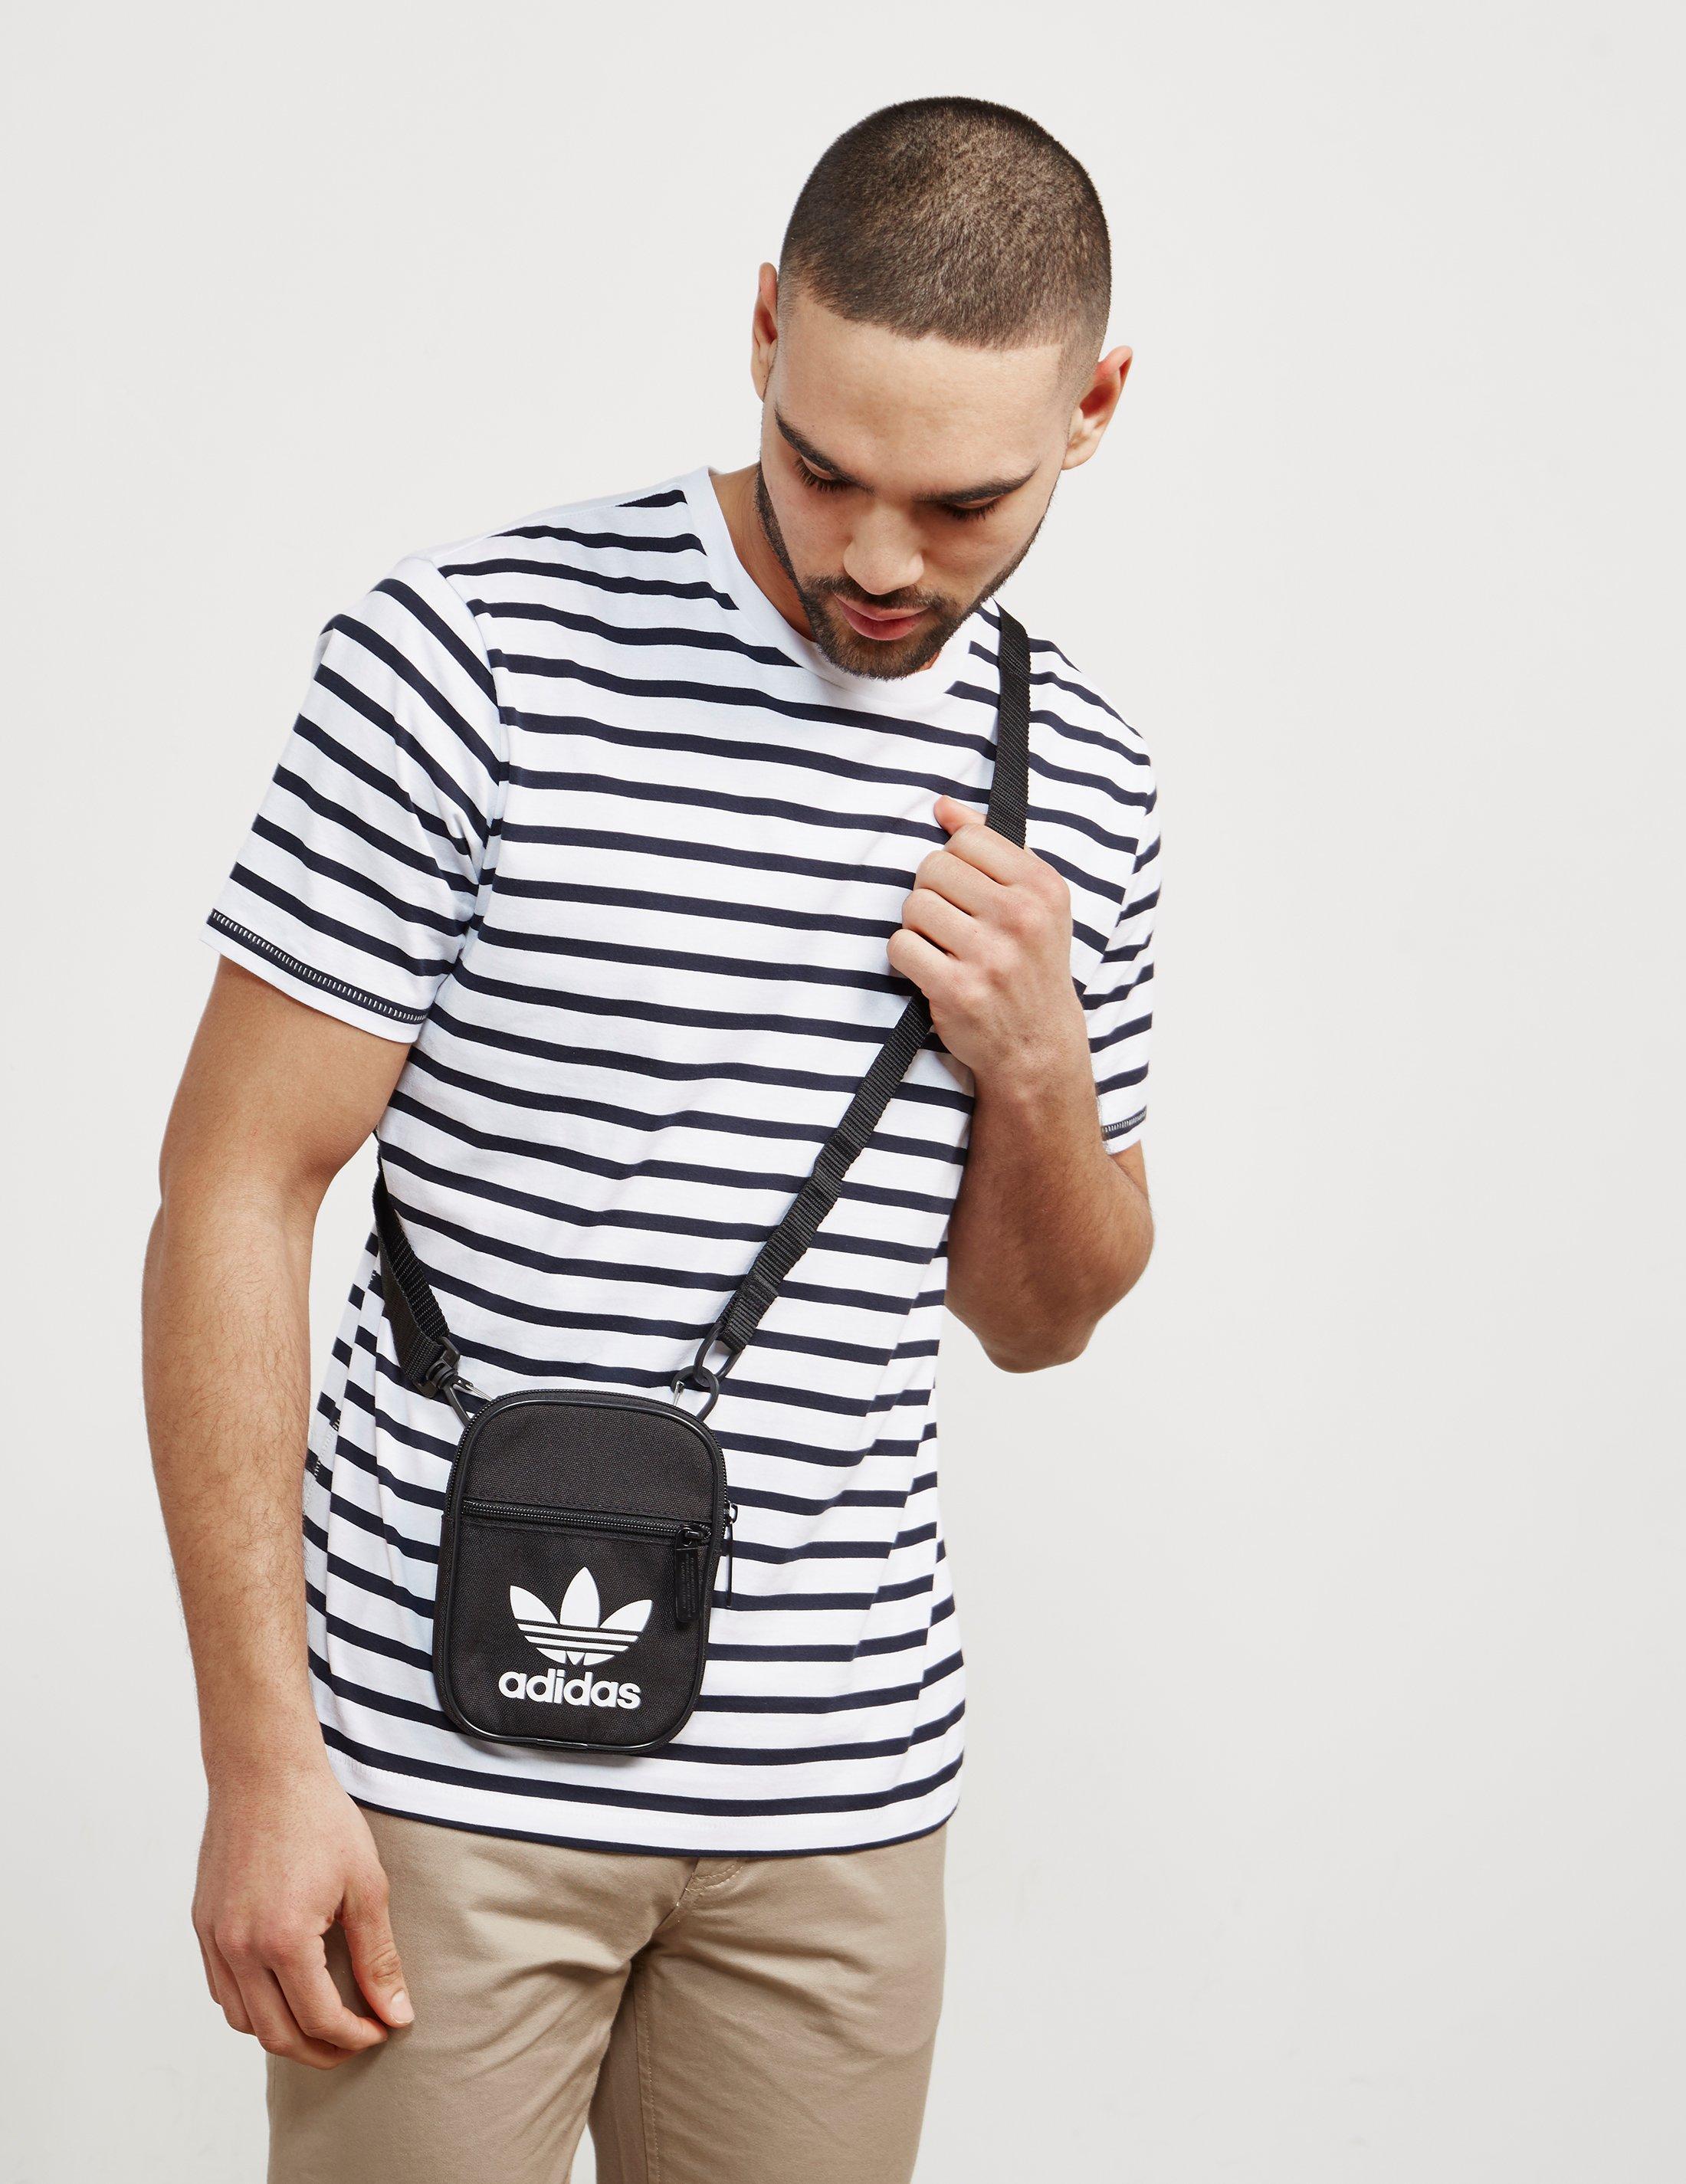 adidas Originals Mens Trefoil Festival Bag Black/white for Men | Lyst